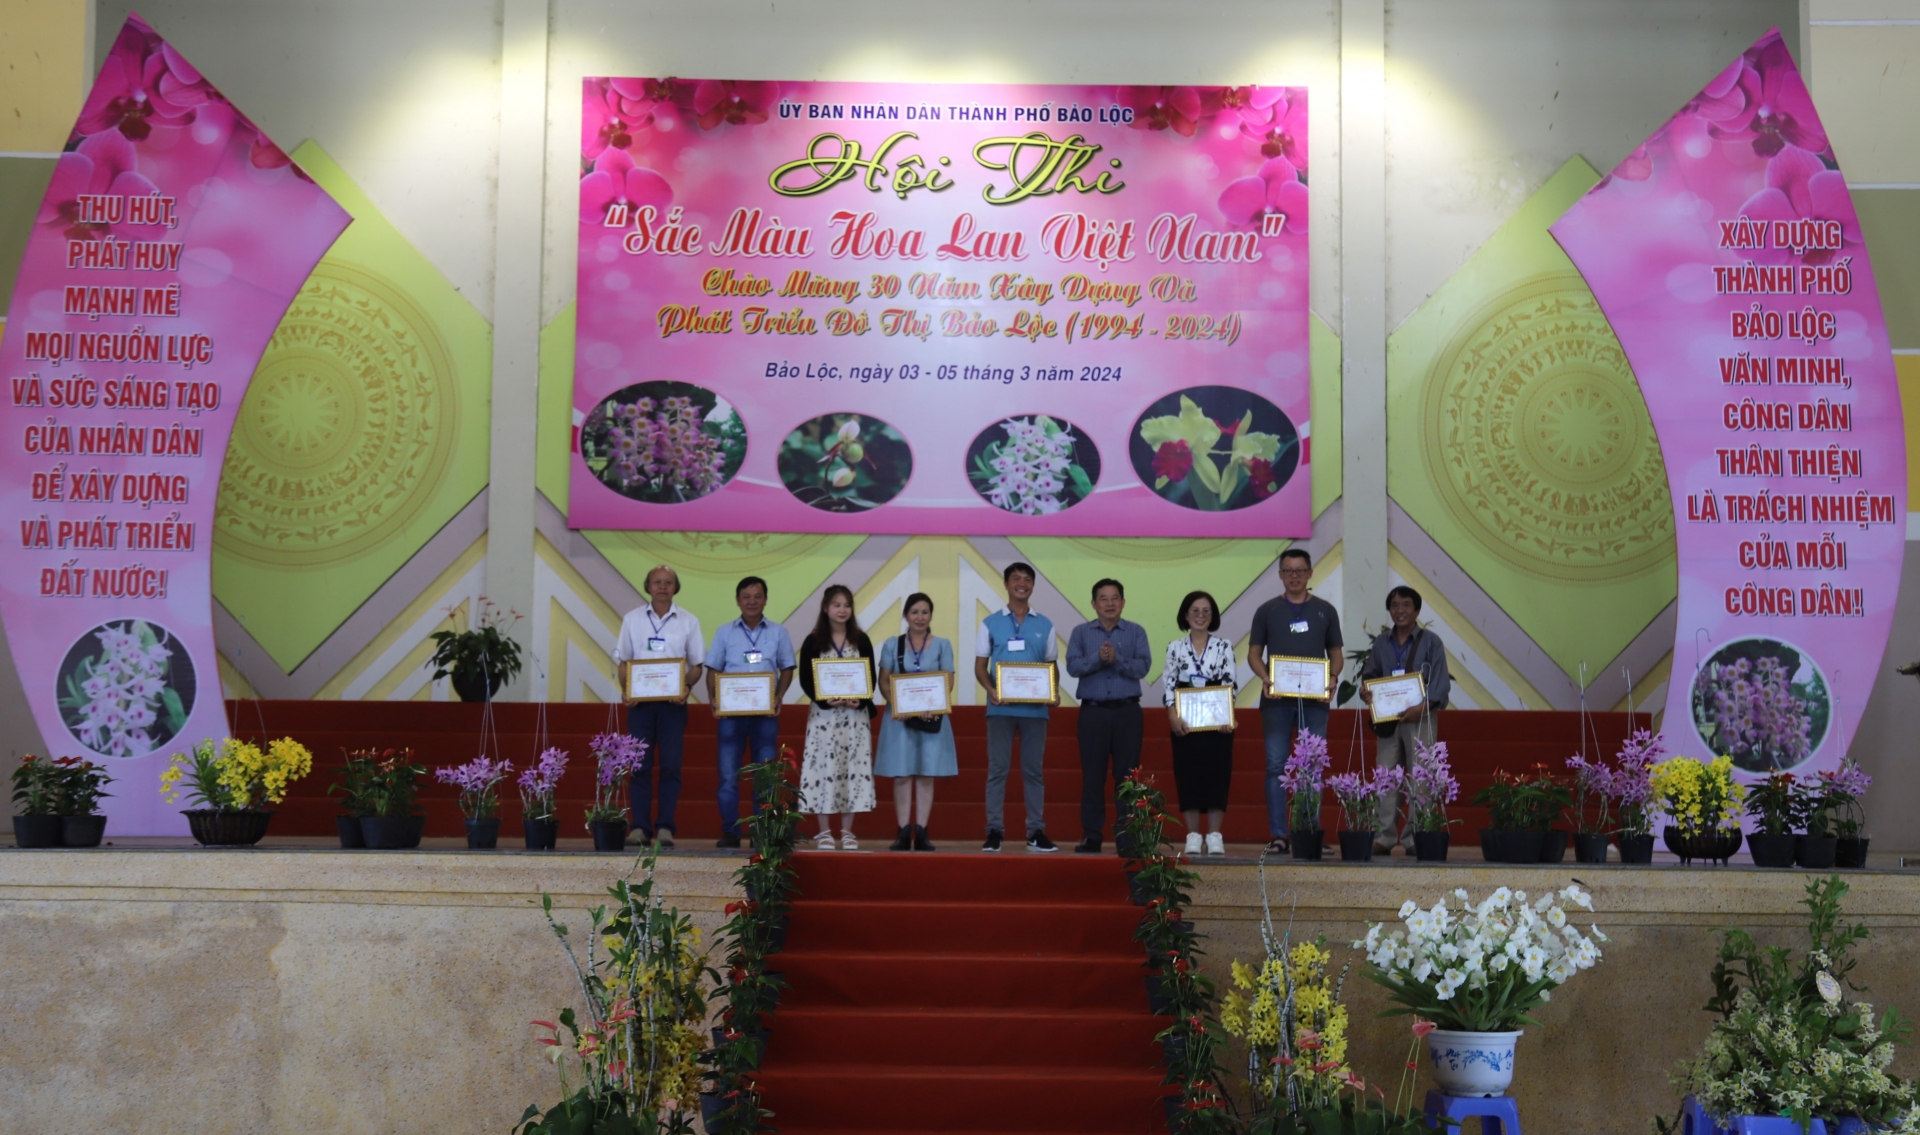 Các chủ vườn lan, nghệ nhân có tác phẩm đạt giải nhì nhận giải thưởng từ Ban tổ chức